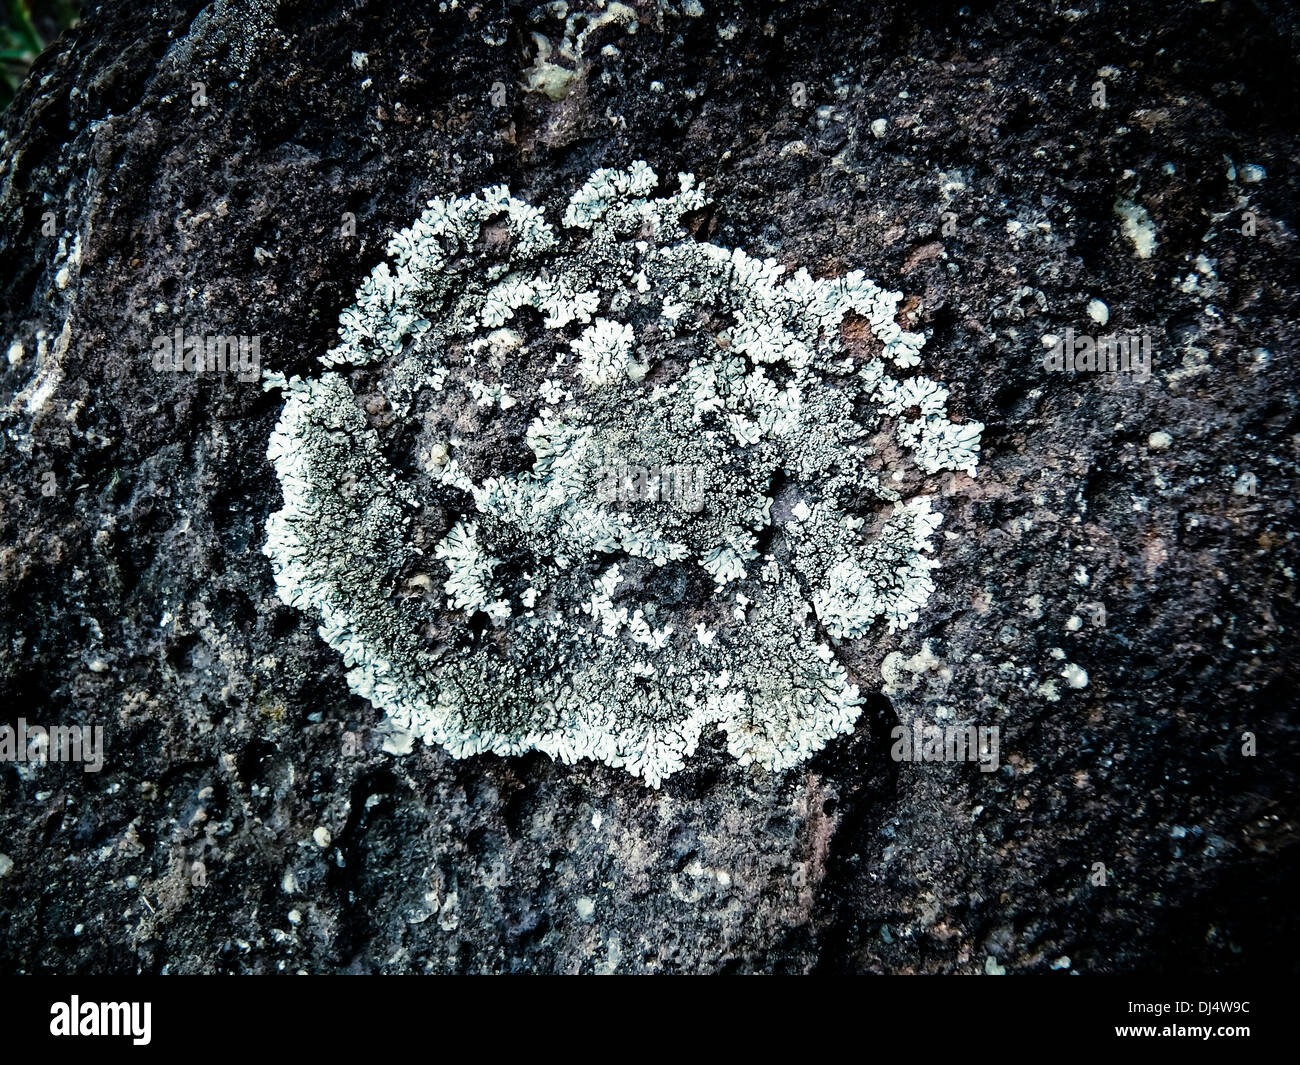 Foliose lichen squamulose (Parmelia pastillifera et Physcia aipolia) on basalt. Stock Photo